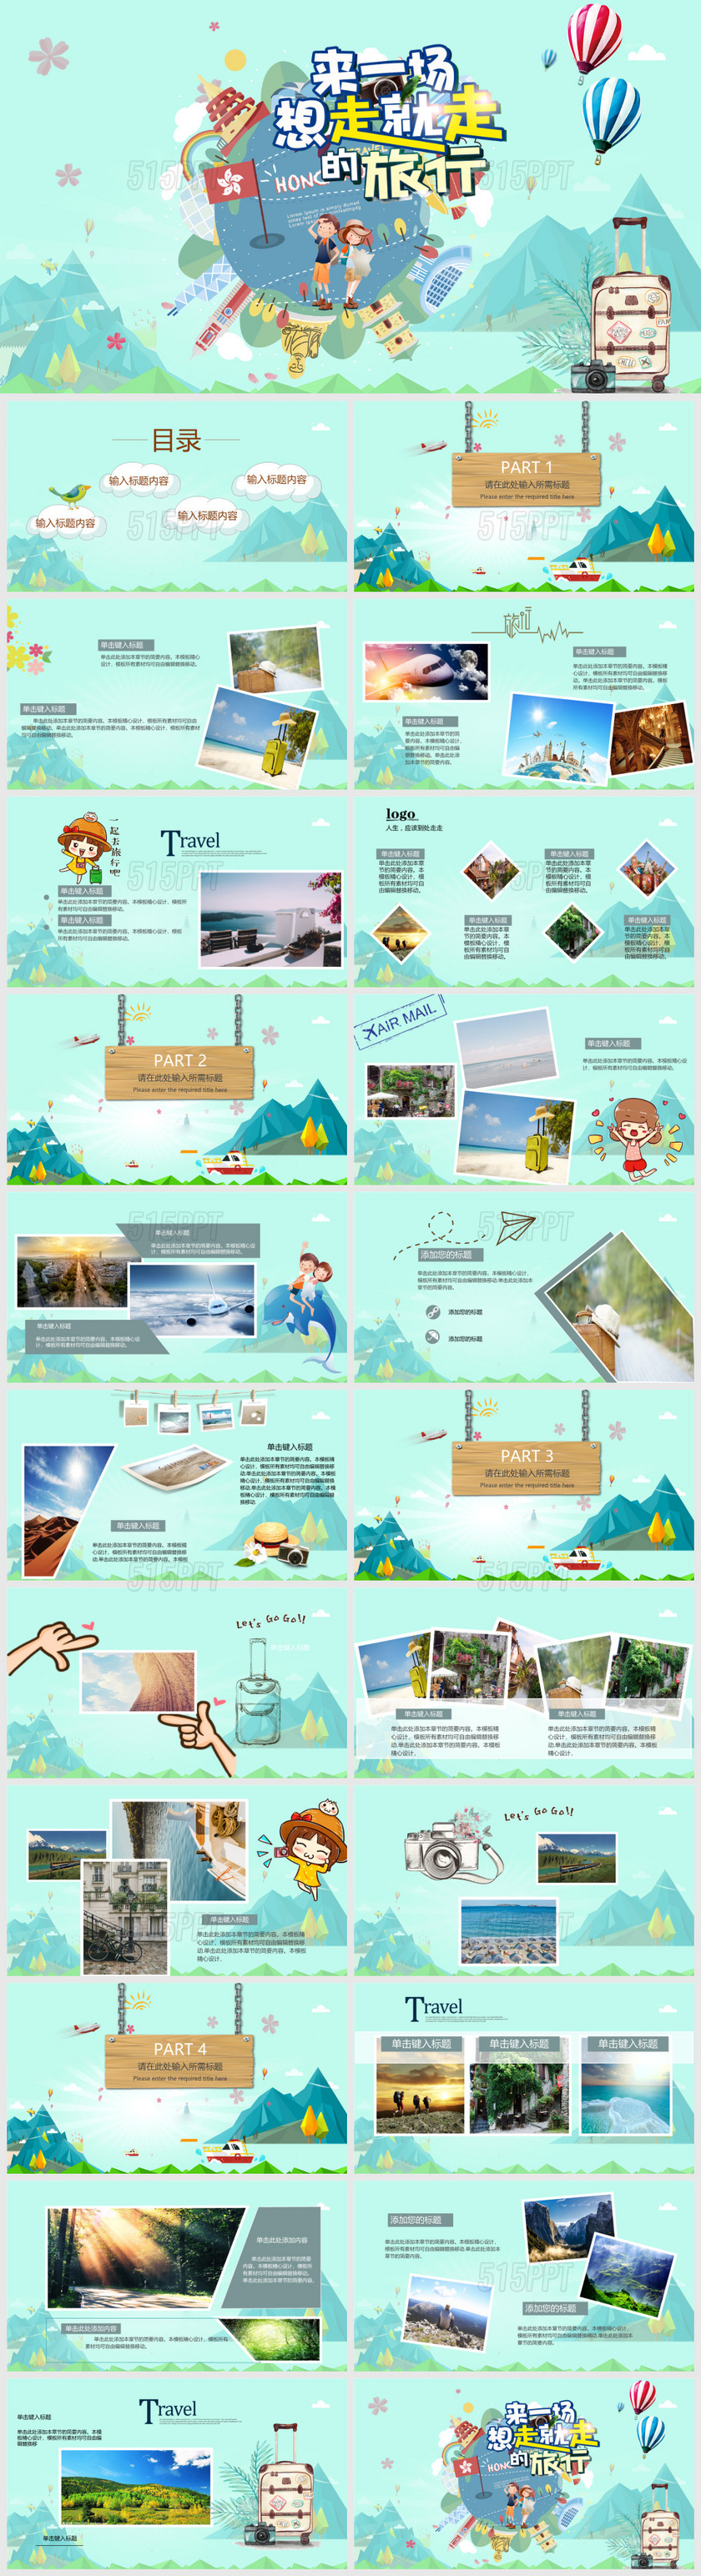 来一场想走就走的旅行旅游行业通用宣传相册旅行计划PPT模板